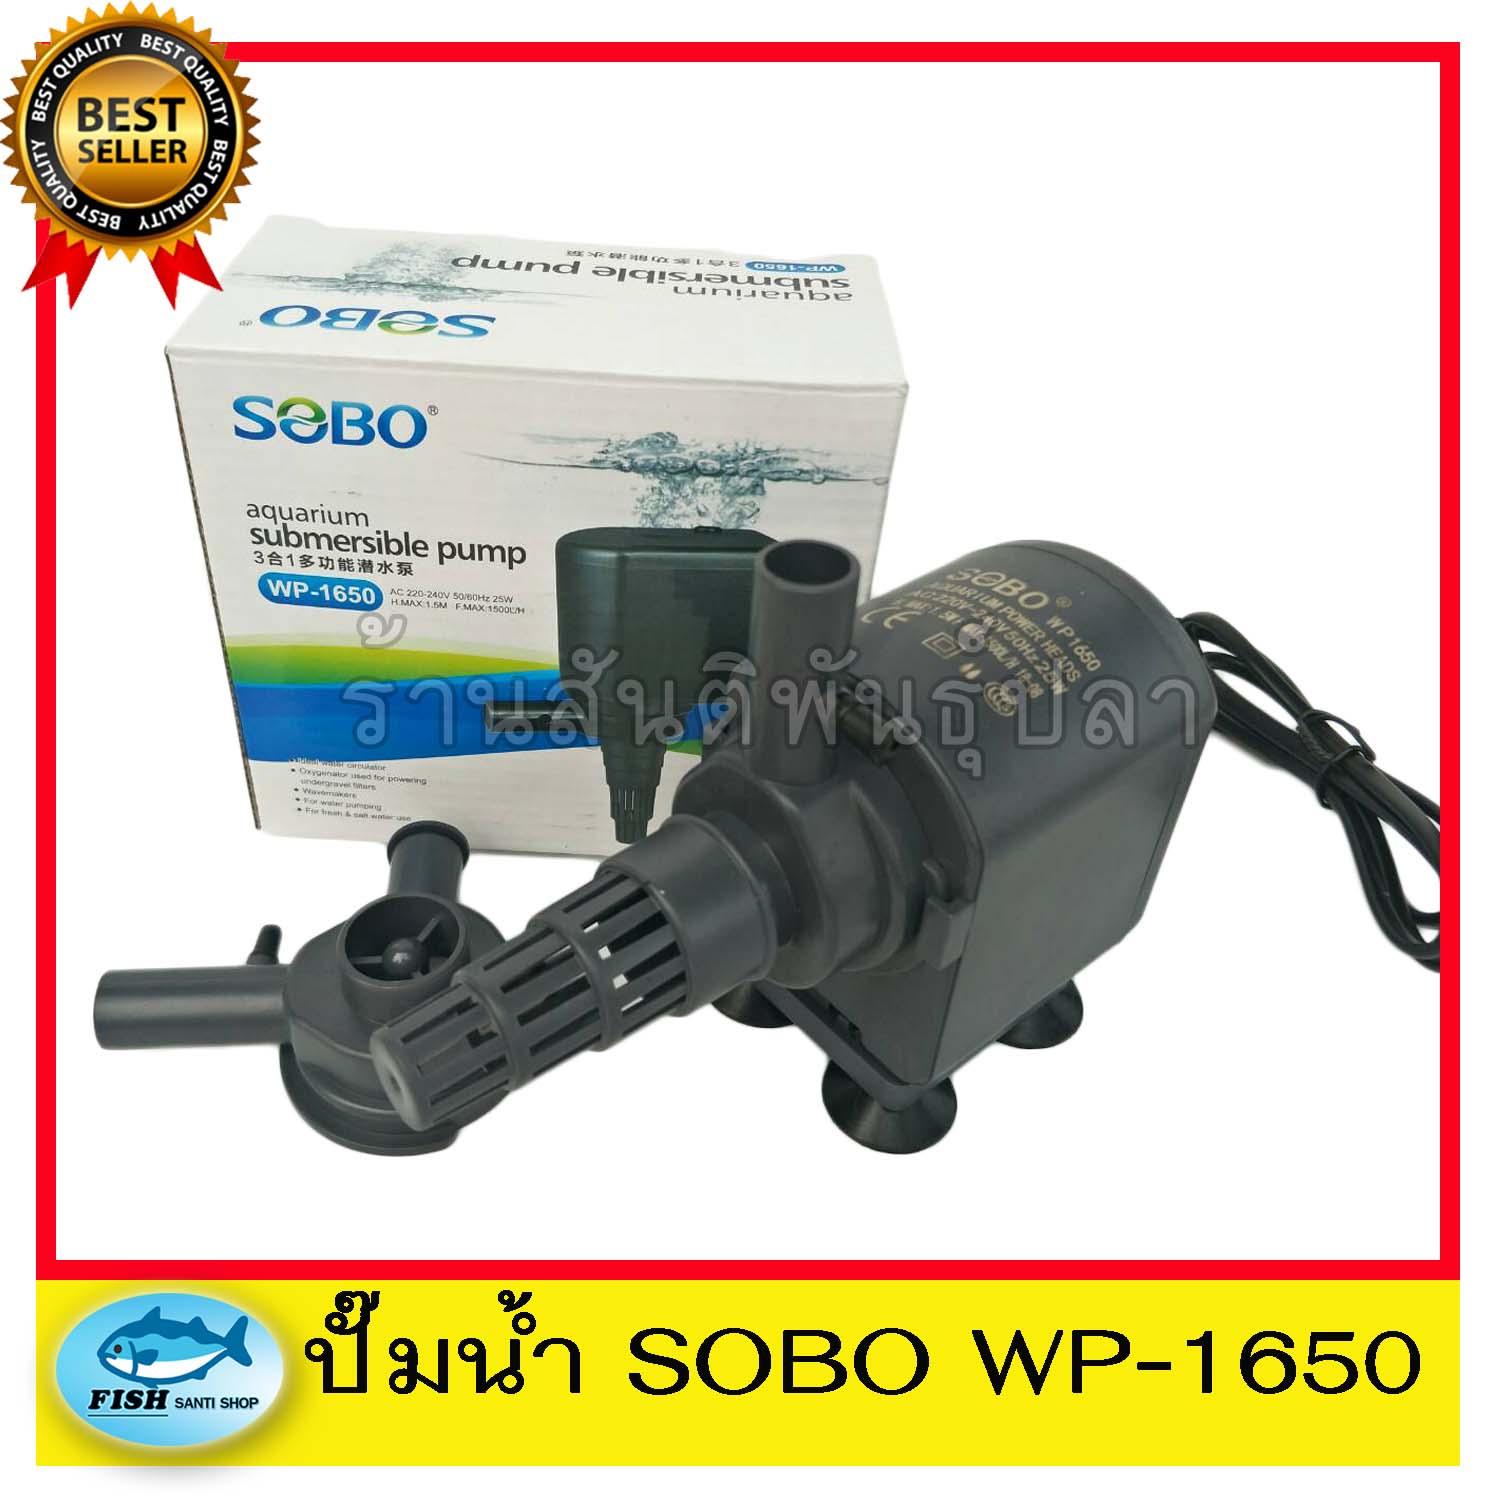 ปั๊มน้ำ SOBO WP-1650